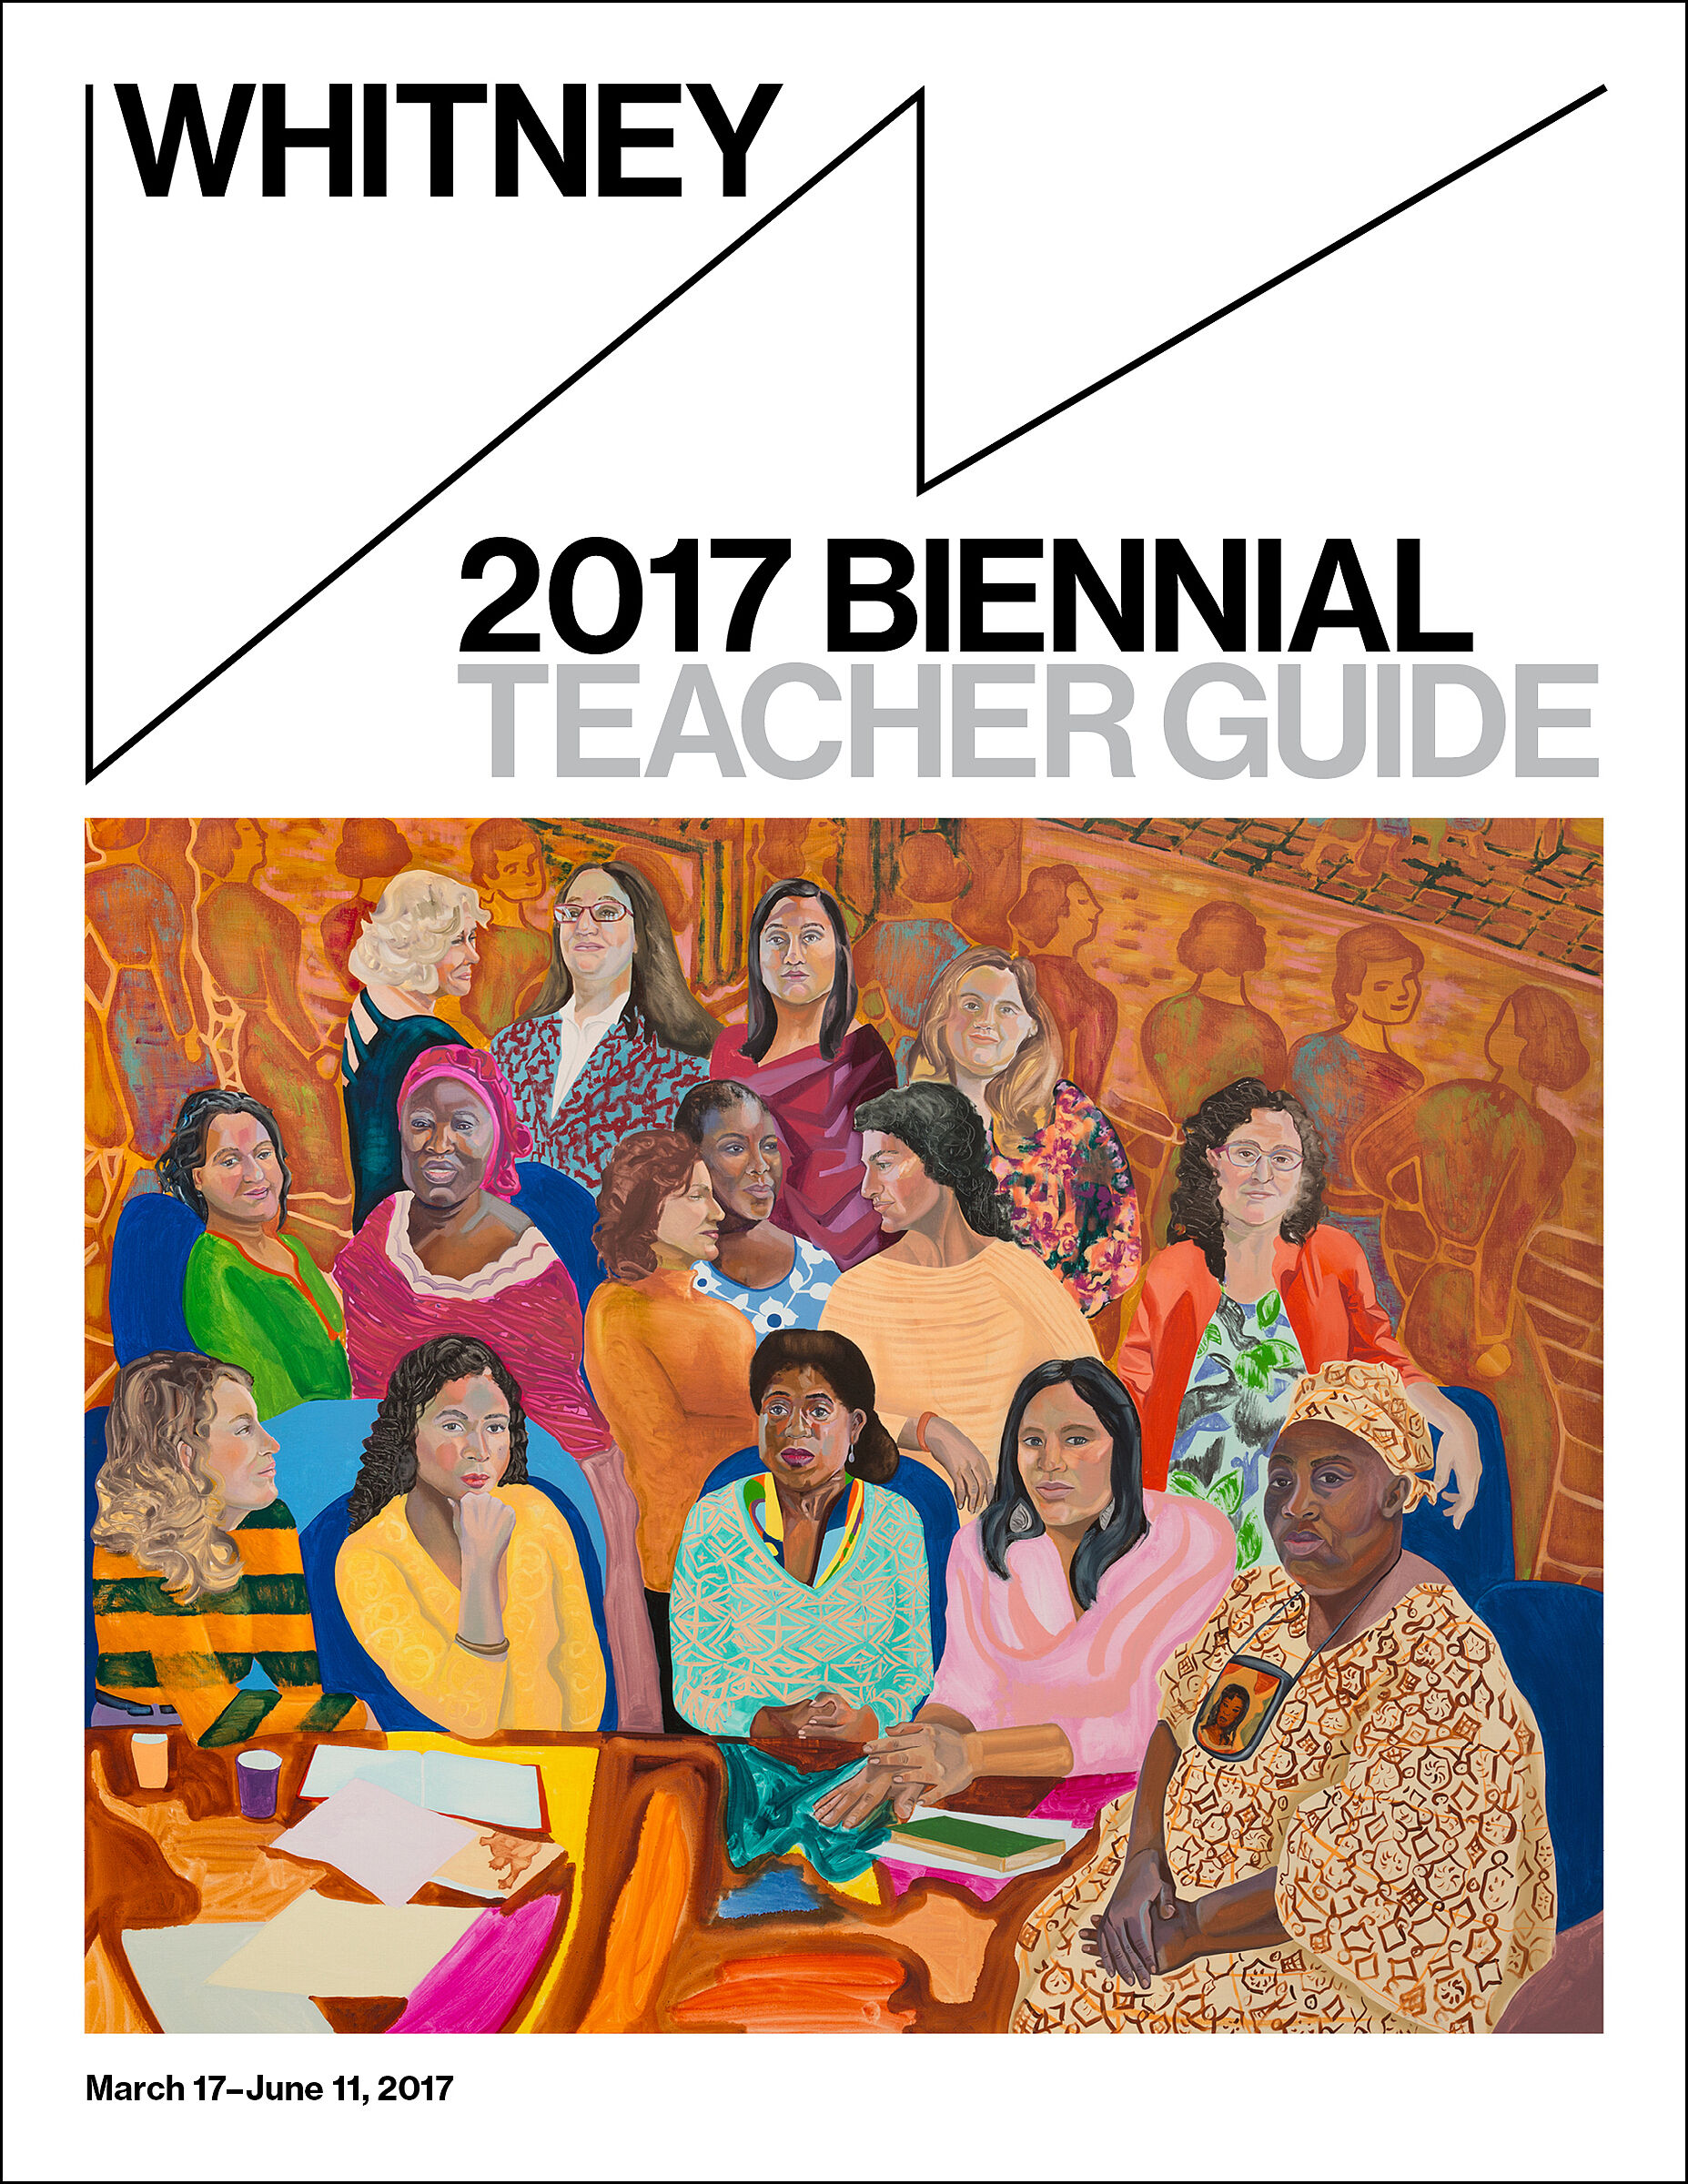 Biennial 2017 Teacher Guide cover.